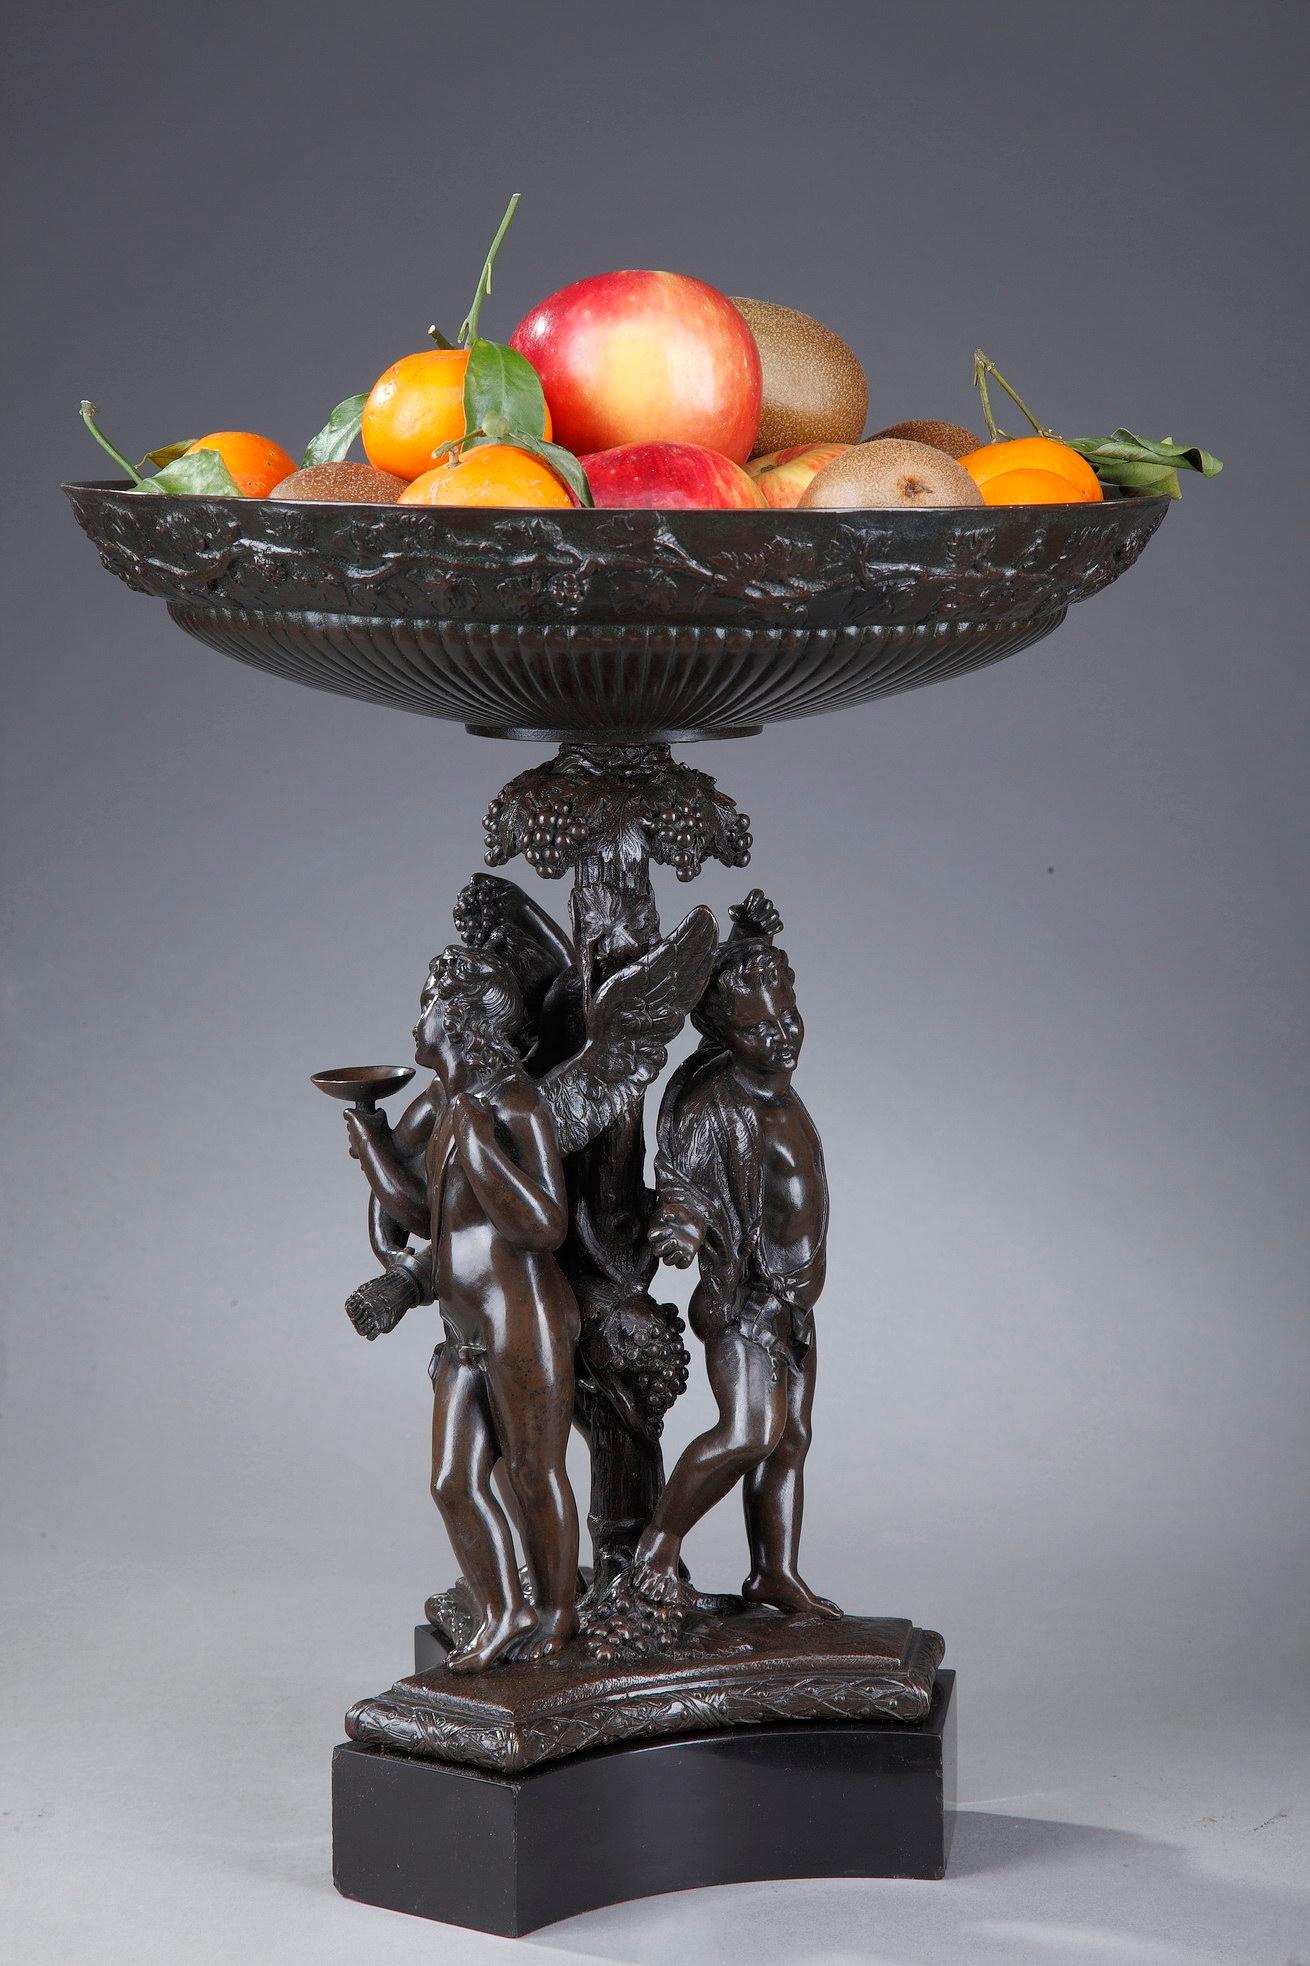 Diese aus patinierter Bronze geschnitzte Obstschale aus dem 19. Jahrhundert zeigt eine mythologische Szene mit drei geflügelten Amoretten, die Weinblätter tragen und einen Kelch mit Trauben halten. Sie lehnen sich an den zentralen Fuß, der reich mit